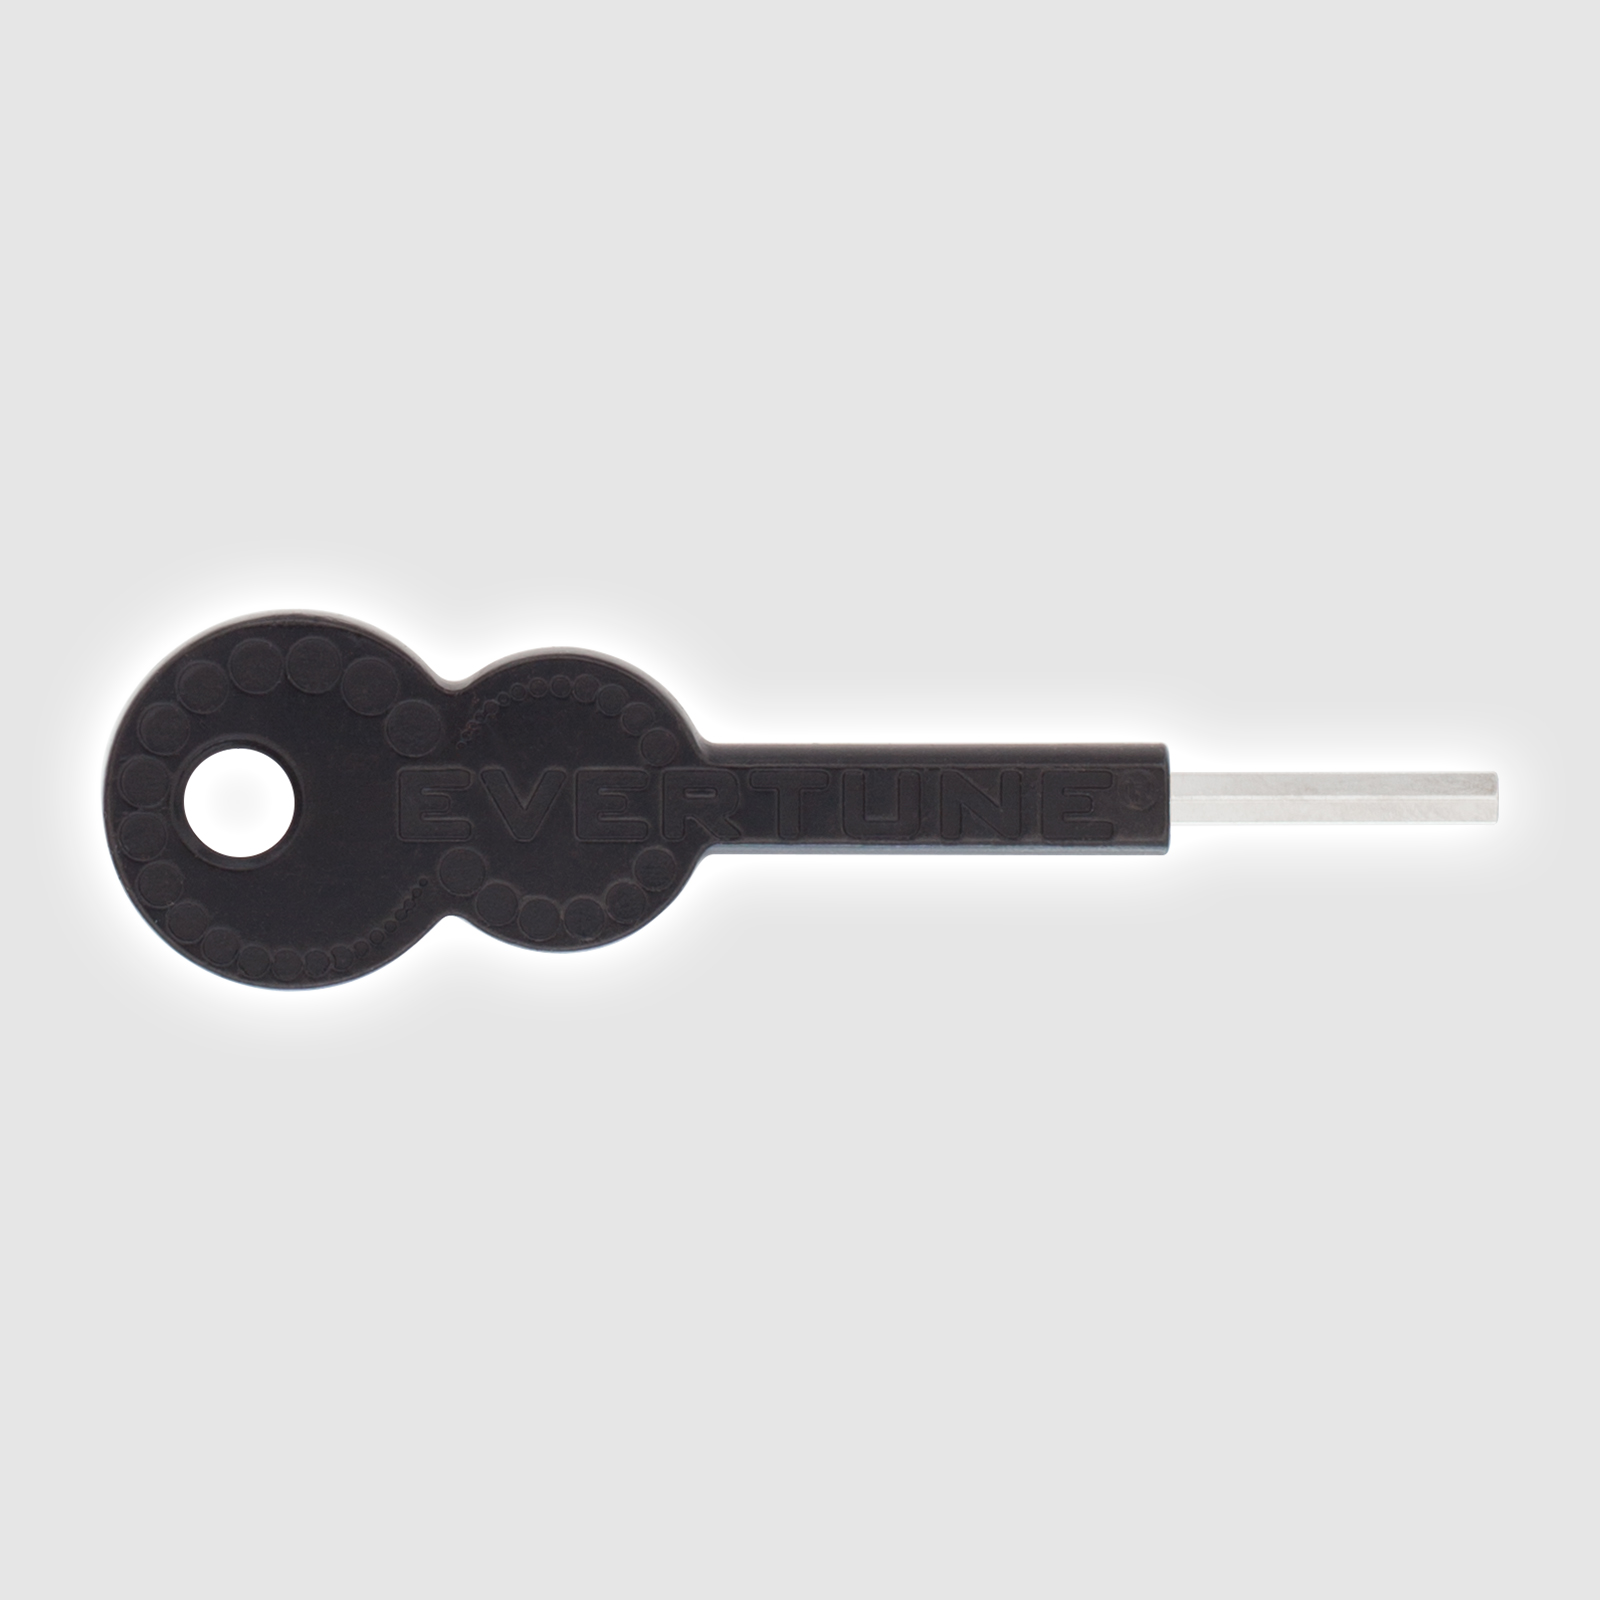 Hex Tuning Key (2.5mm)